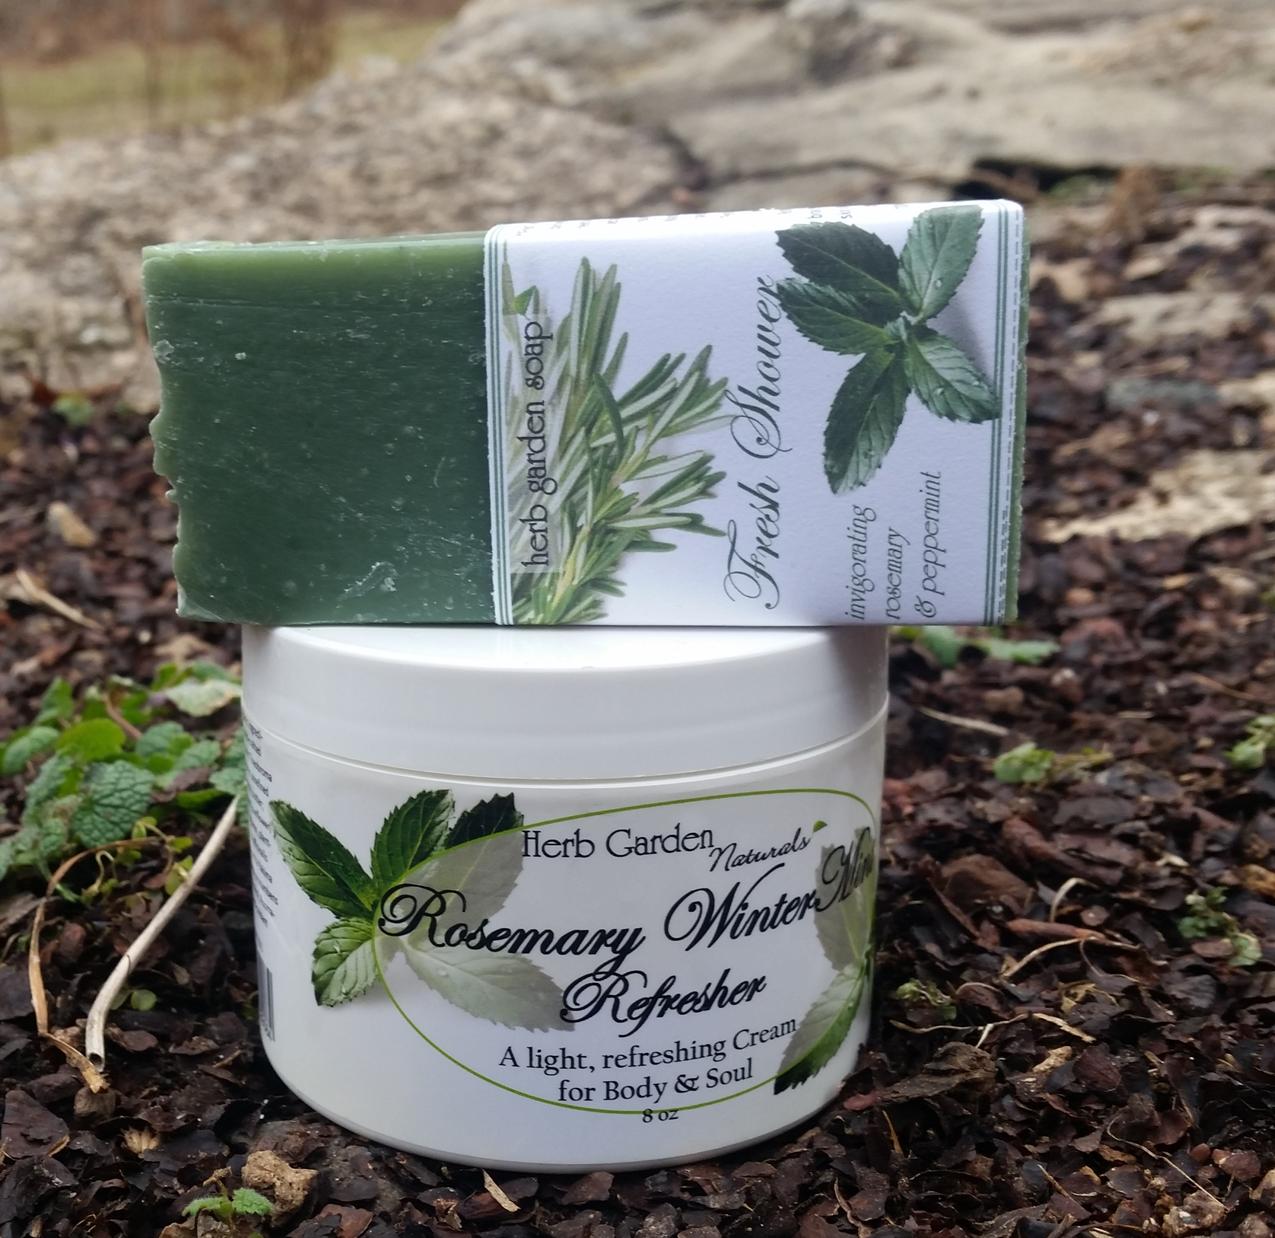 Rosemary WinterMint Refresher Organic Body Cream